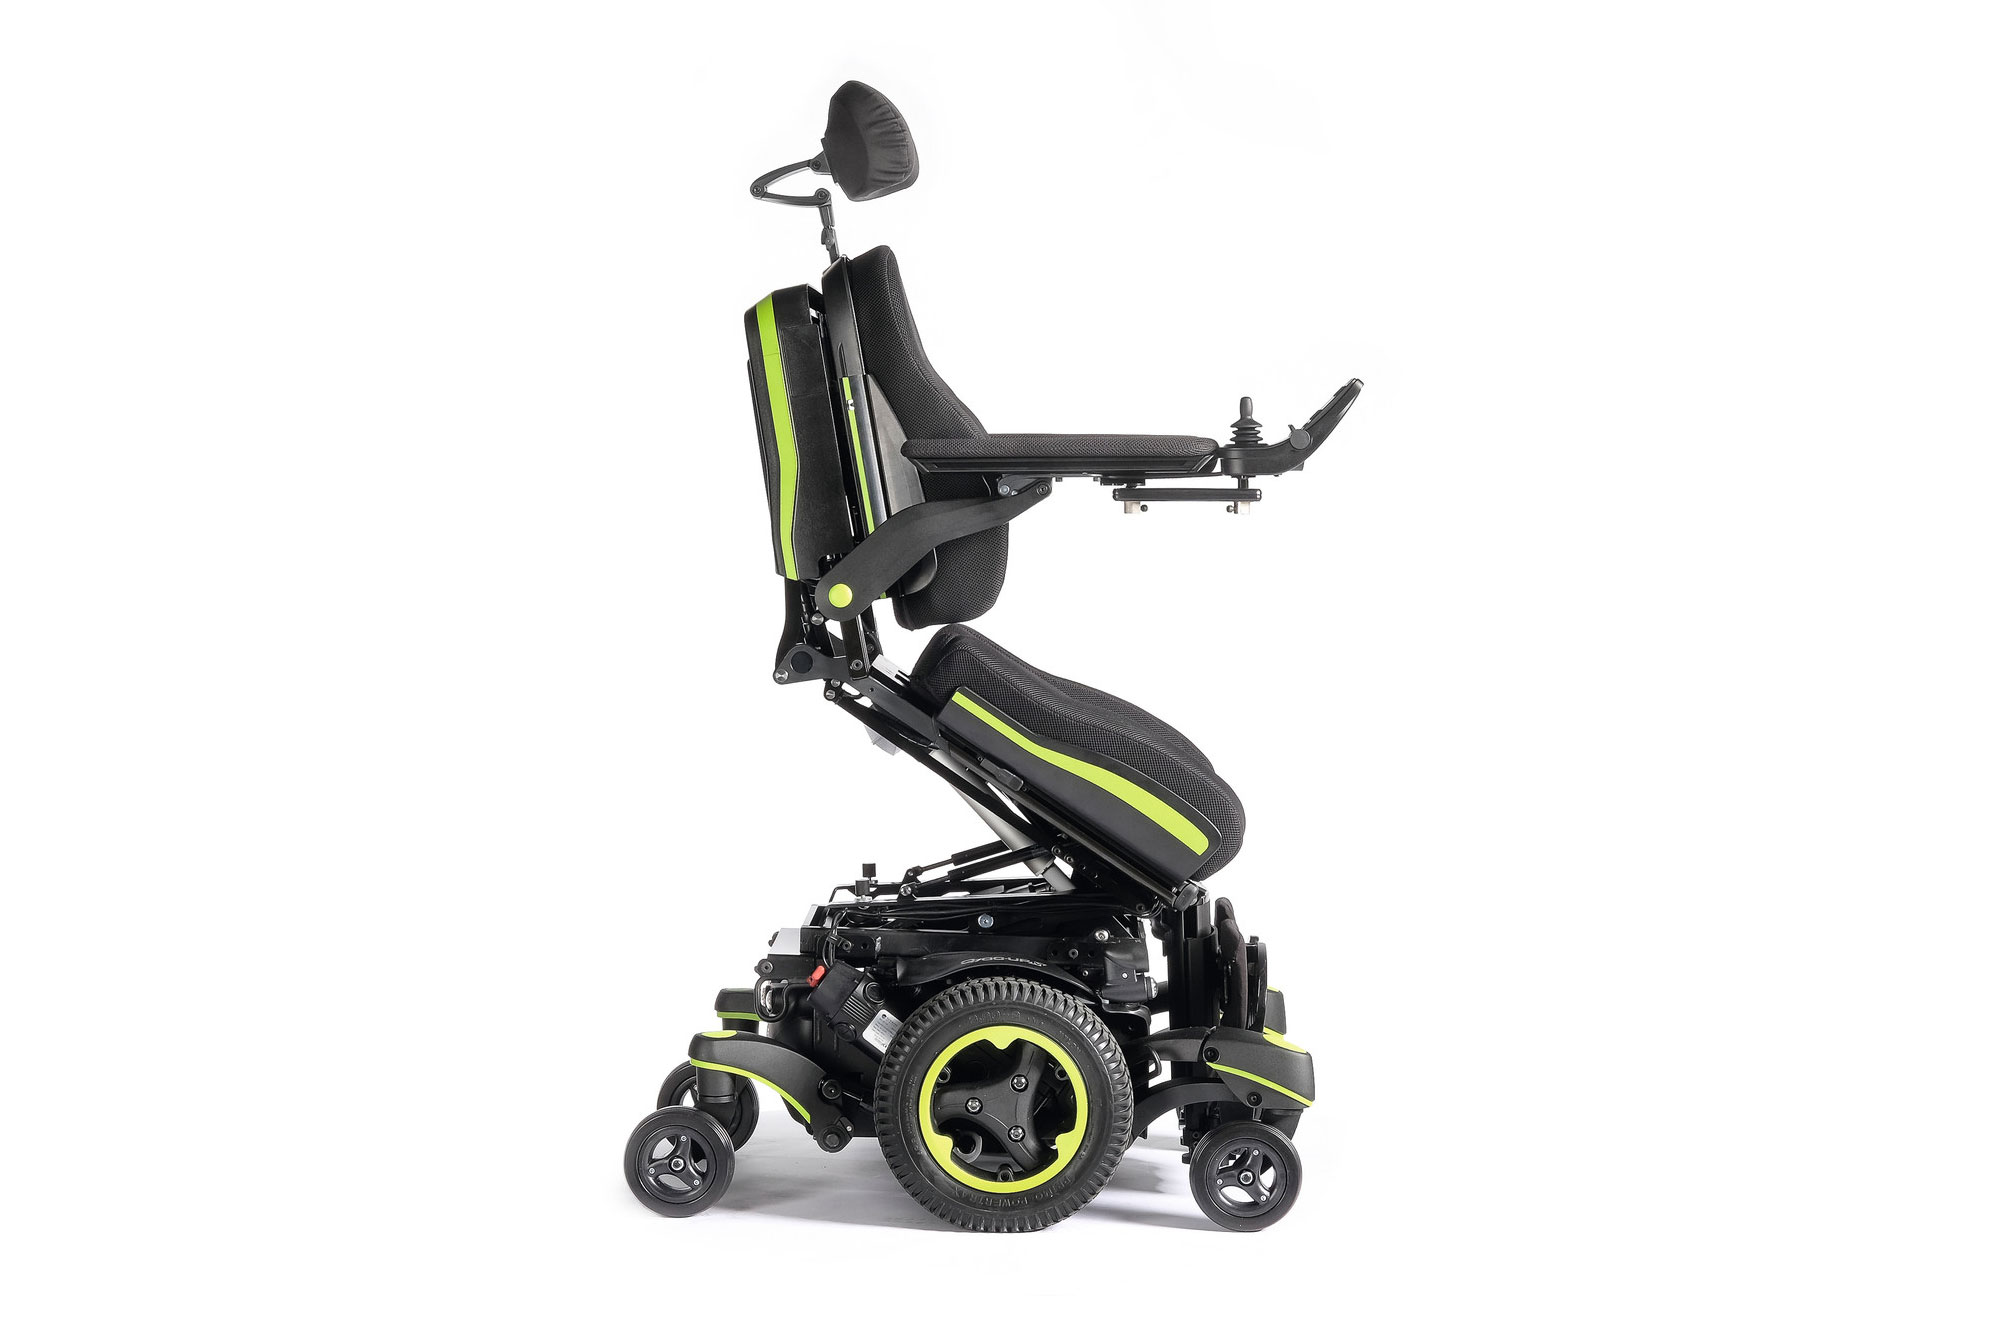 Quickie Q700-UP M SEDEO ERGO Standing Wheelchair